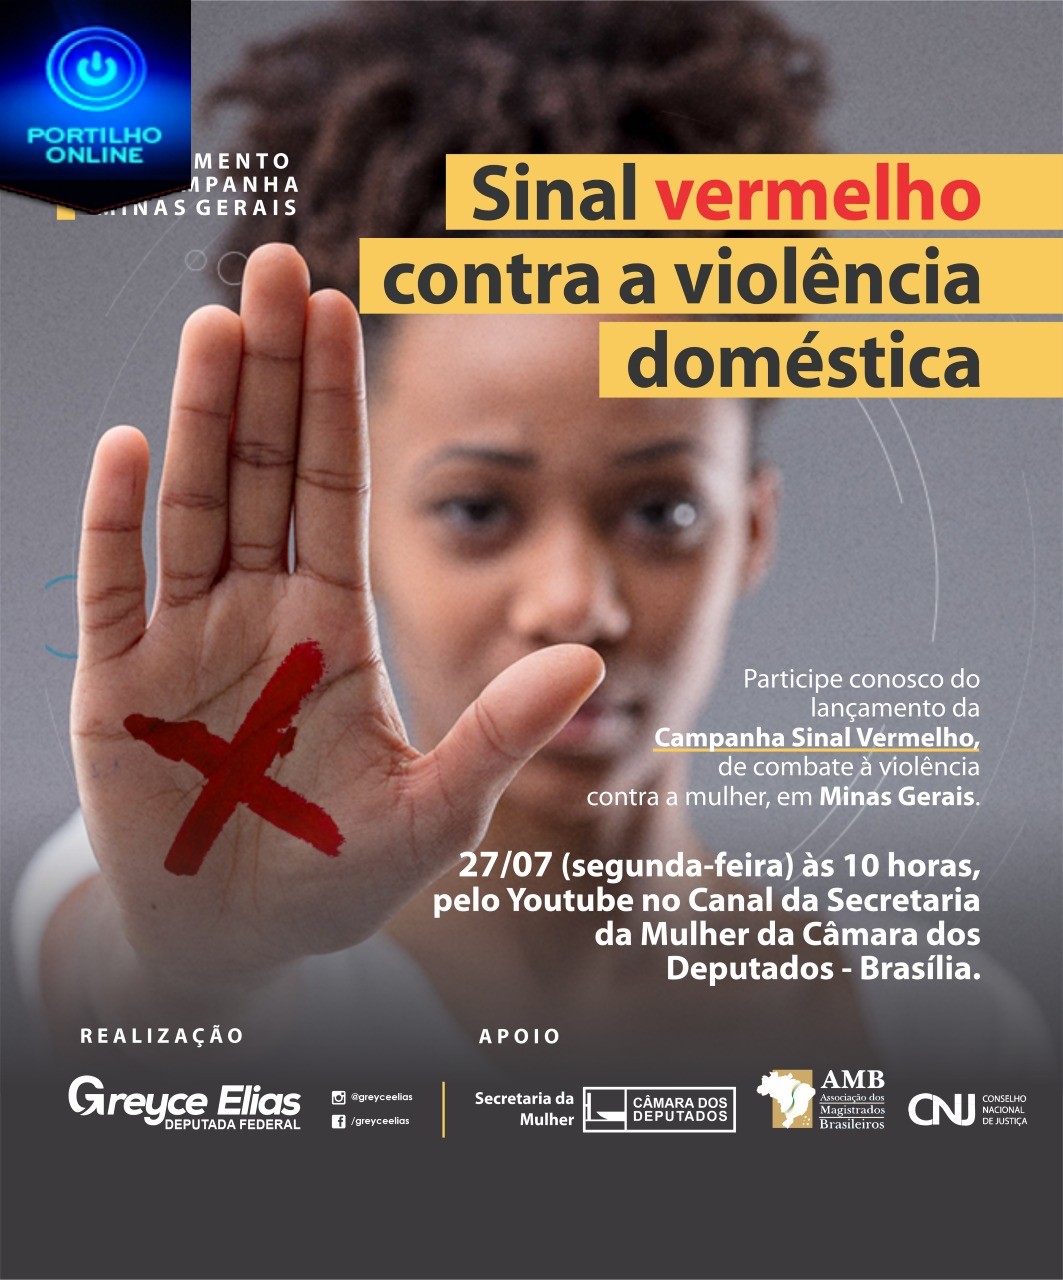 👉👏👏👏👏👏👍”Campanha Sinal Vermelho” será lançada em Minas Gerais